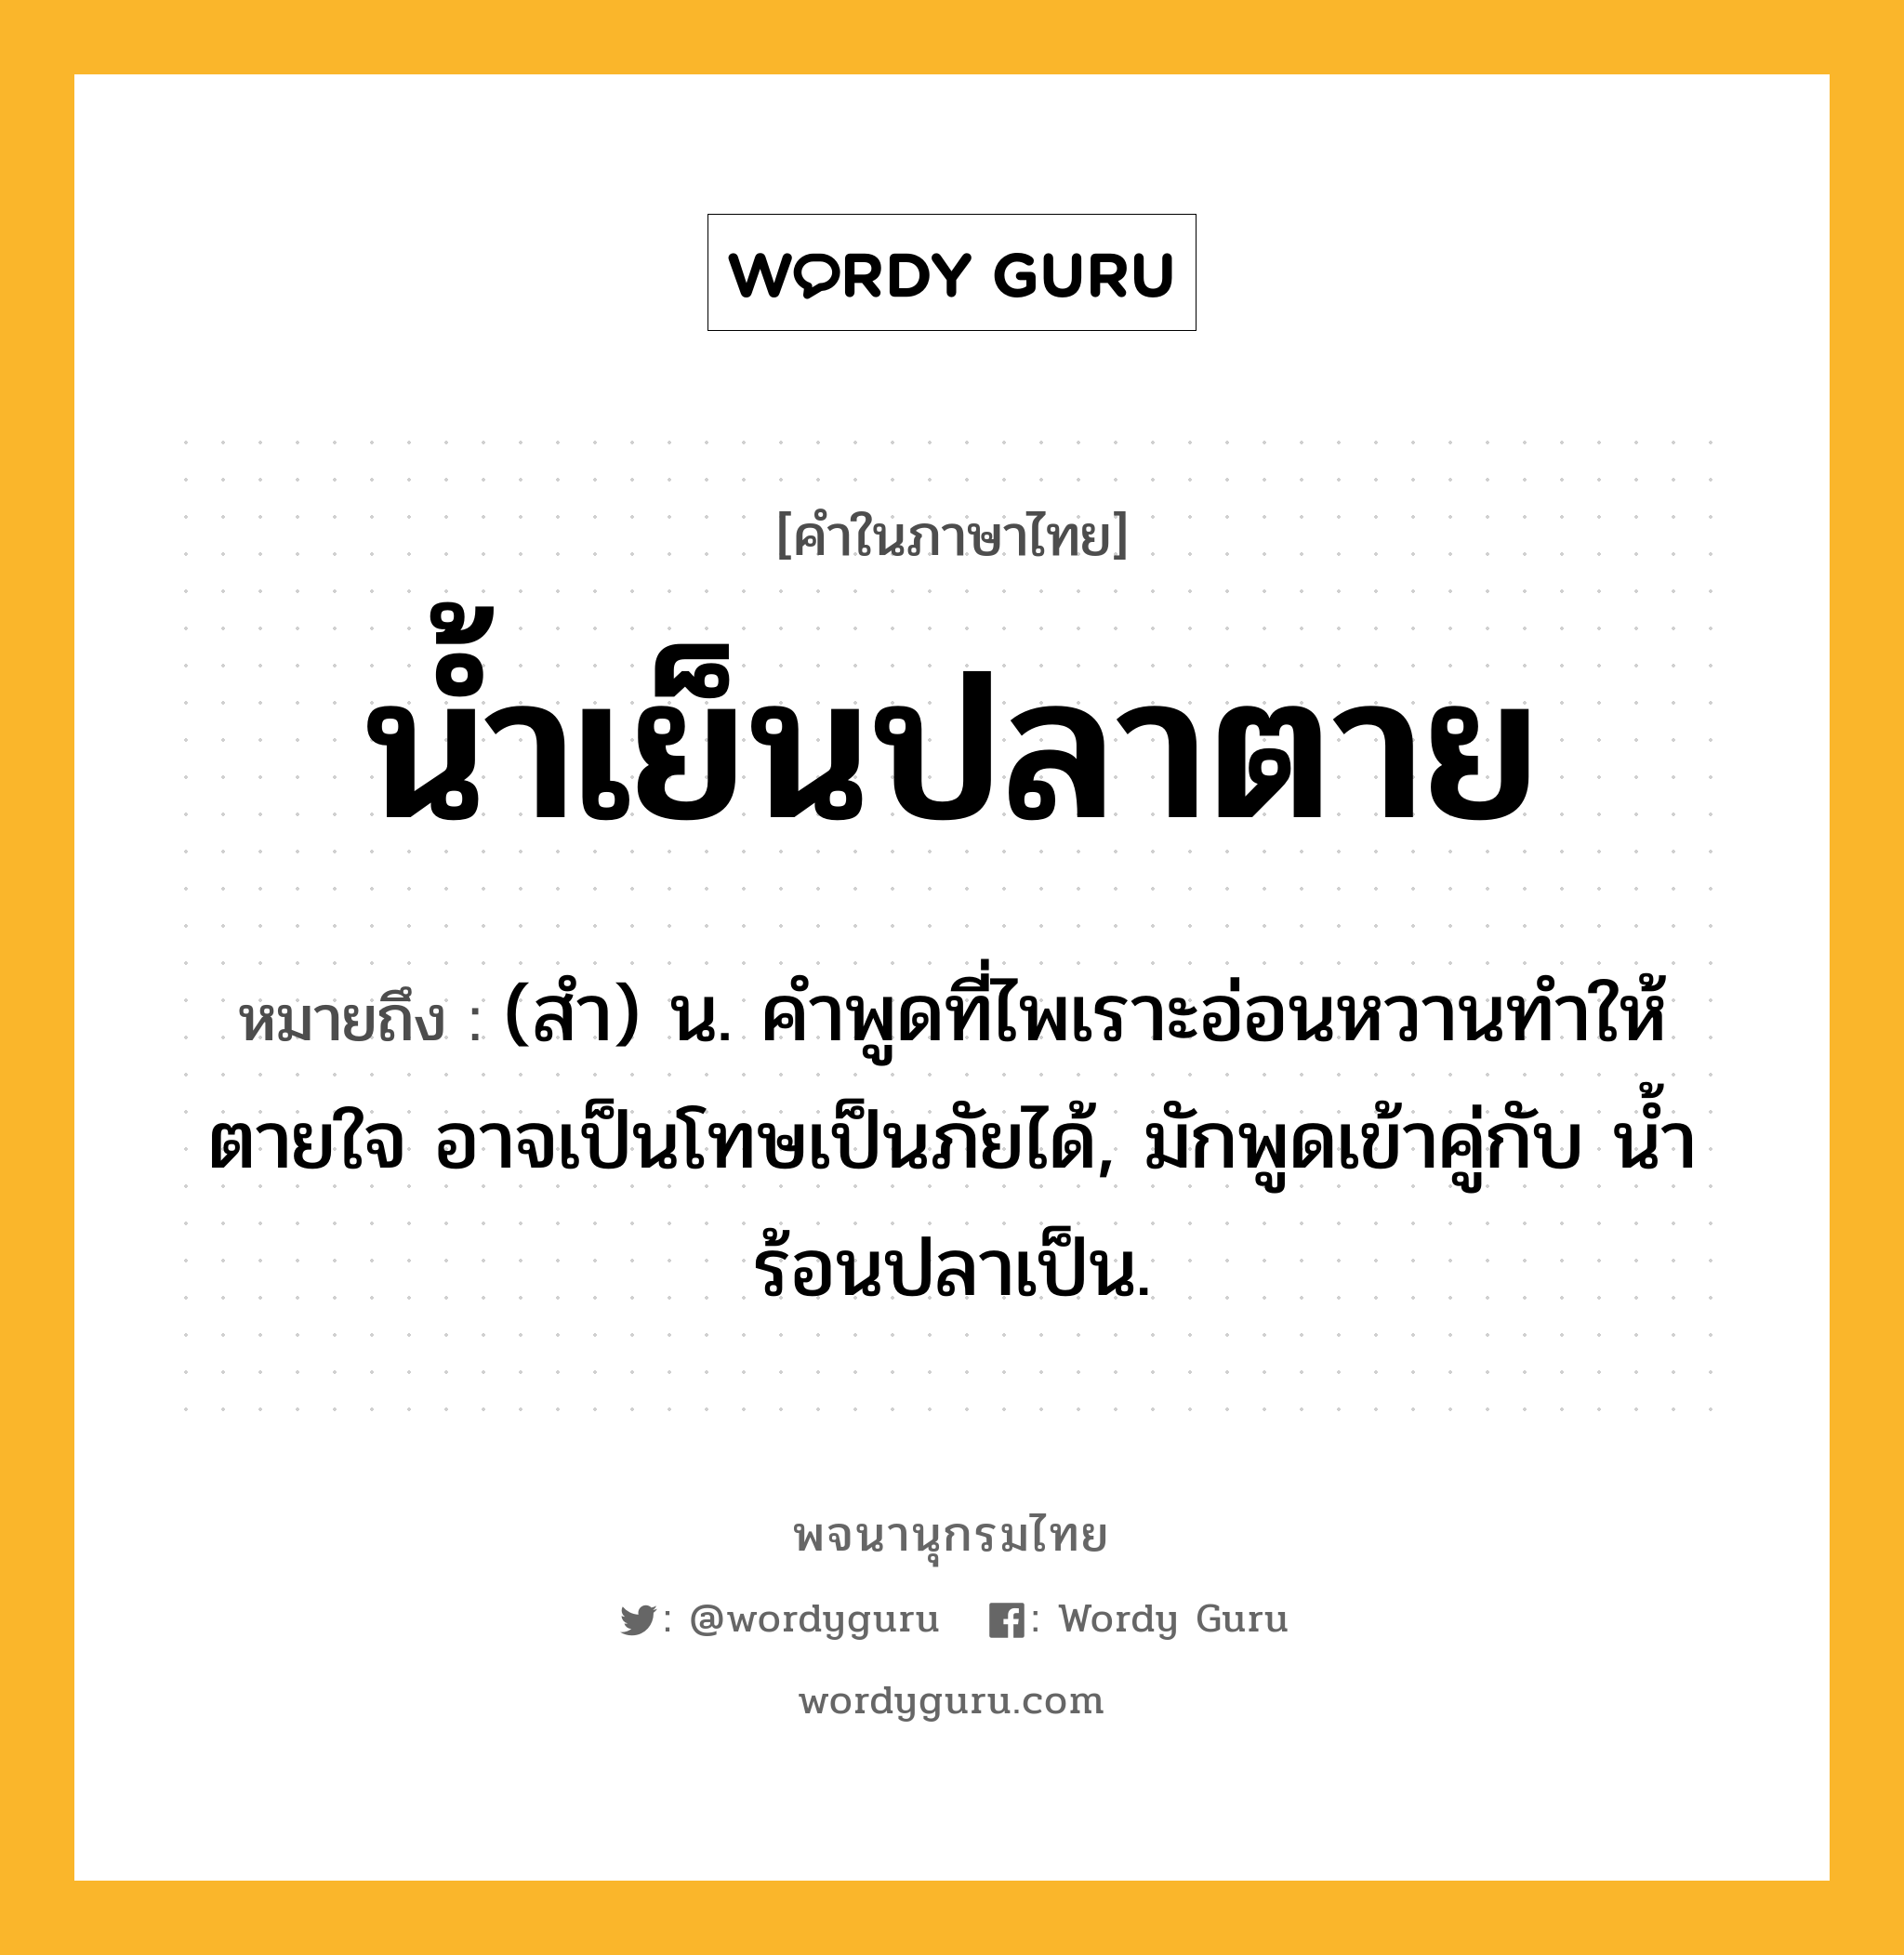 น้ำเย็นปลาตาย หมายถึงอะไร?, คำในภาษาไทย น้ำเย็นปลาตาย หมายถึง (สํา) น. คําพูดที่ไพเราะอ่อนหวานทำให้ตายใจ อาจเป็นโทษเป็นภัยได้, มักพูดเข้าคู่กับ นํ้าร้อนปลาเป็น.